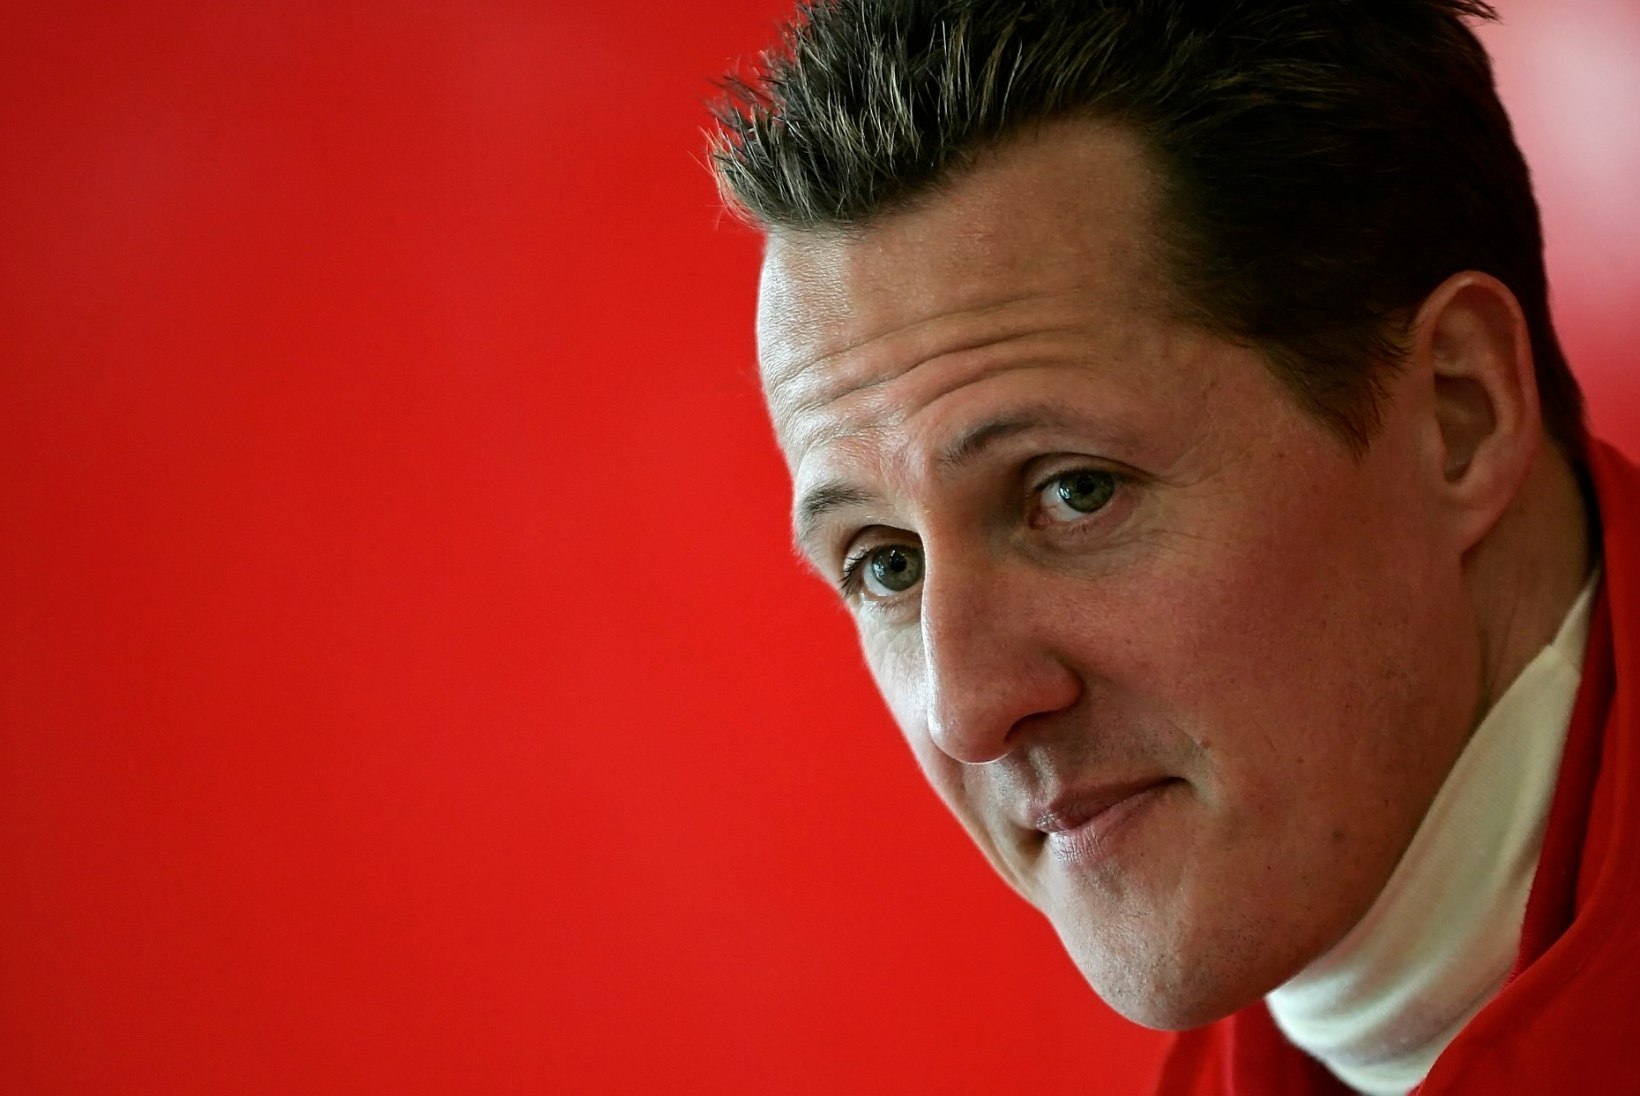 Aasta aega Schumacheri õnnetusest! Mis seisus on vormelistaar?